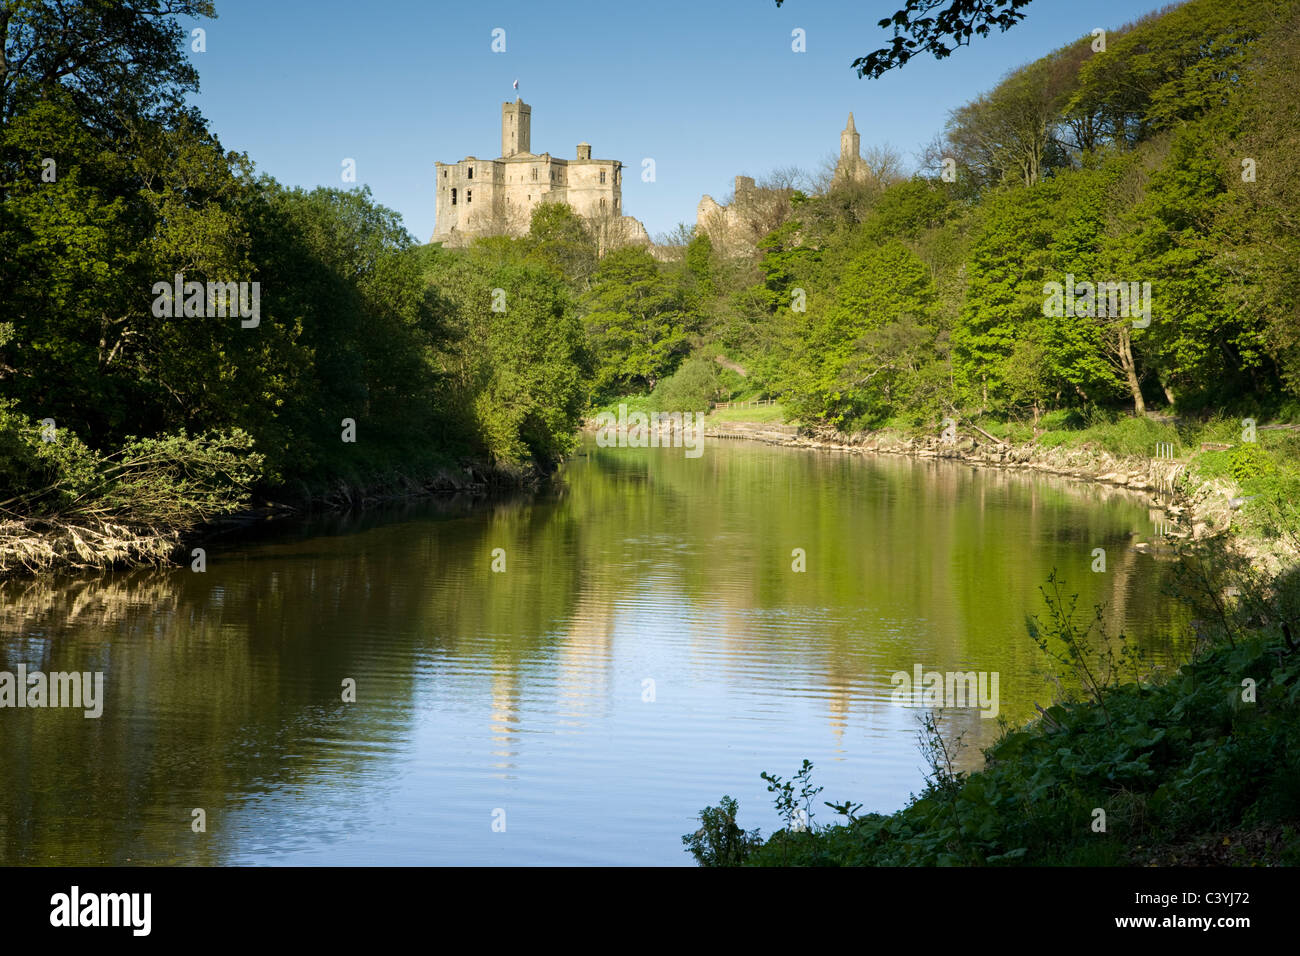 Château de Warkworth se trouve au-dessus de la rivière Coquet dans le Northumberland, Angleterre Banque D'Images